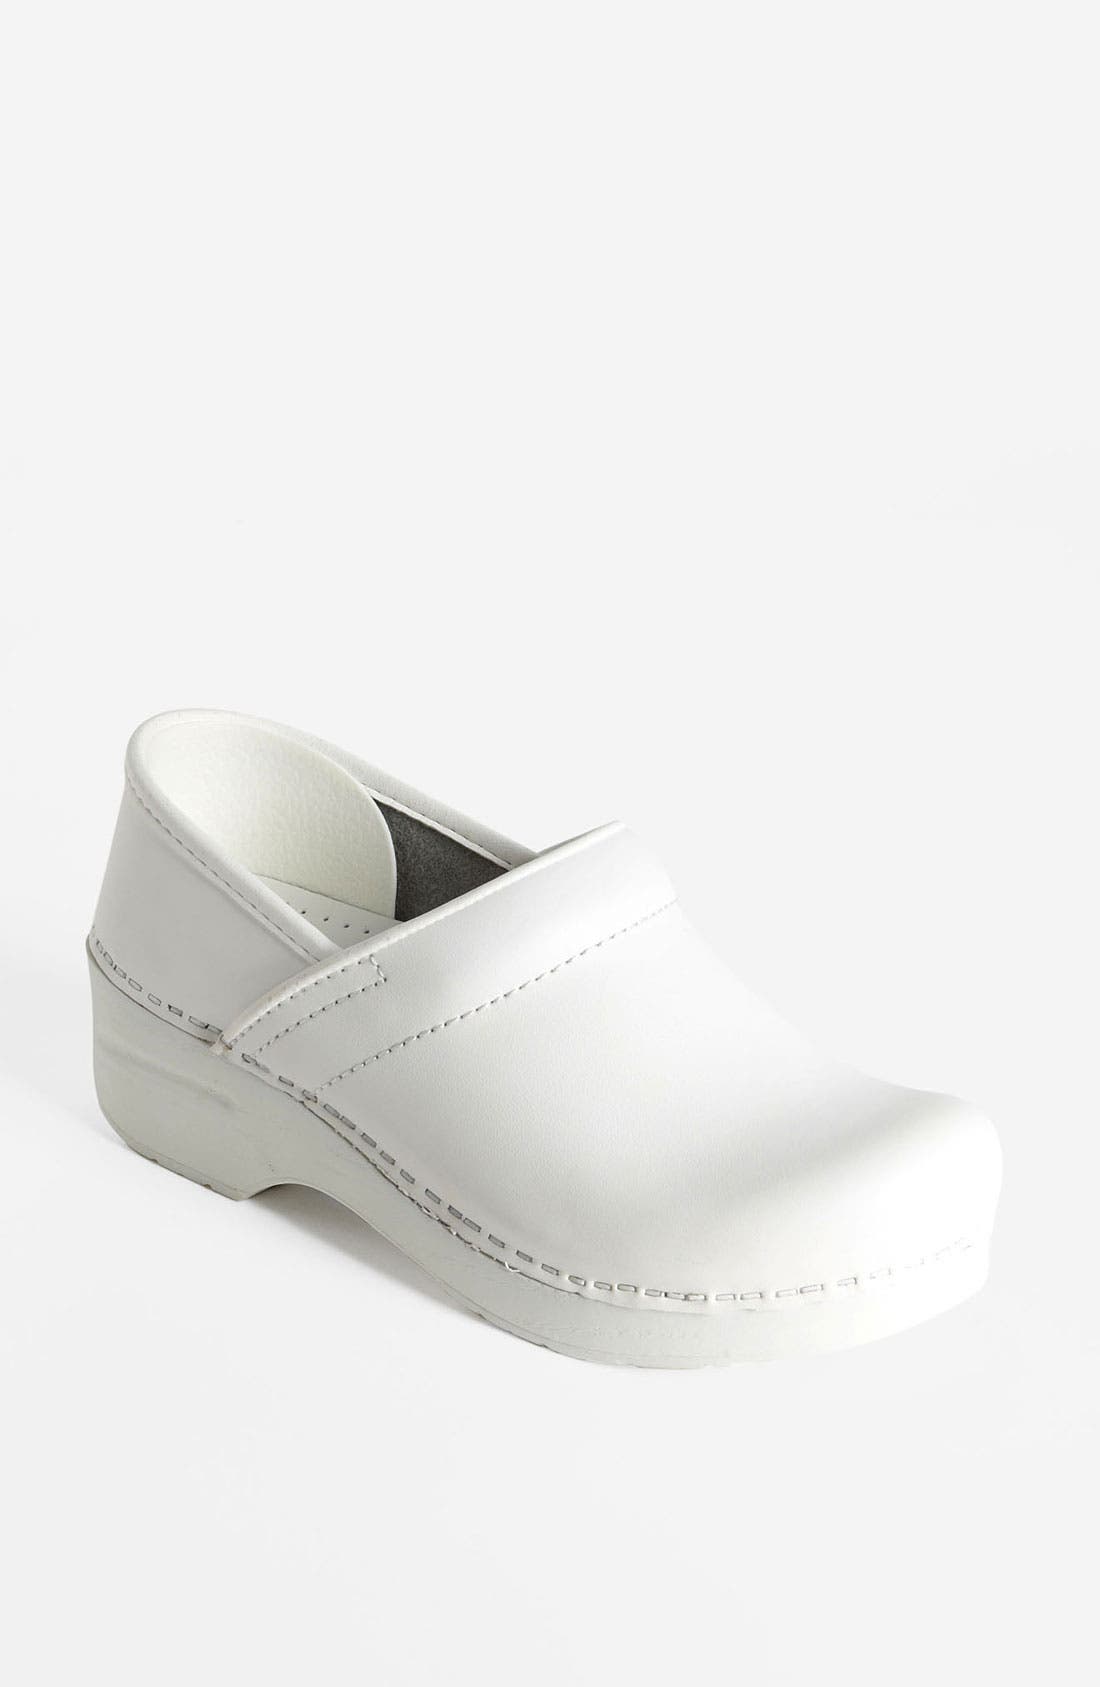 dansko clogs with low heel